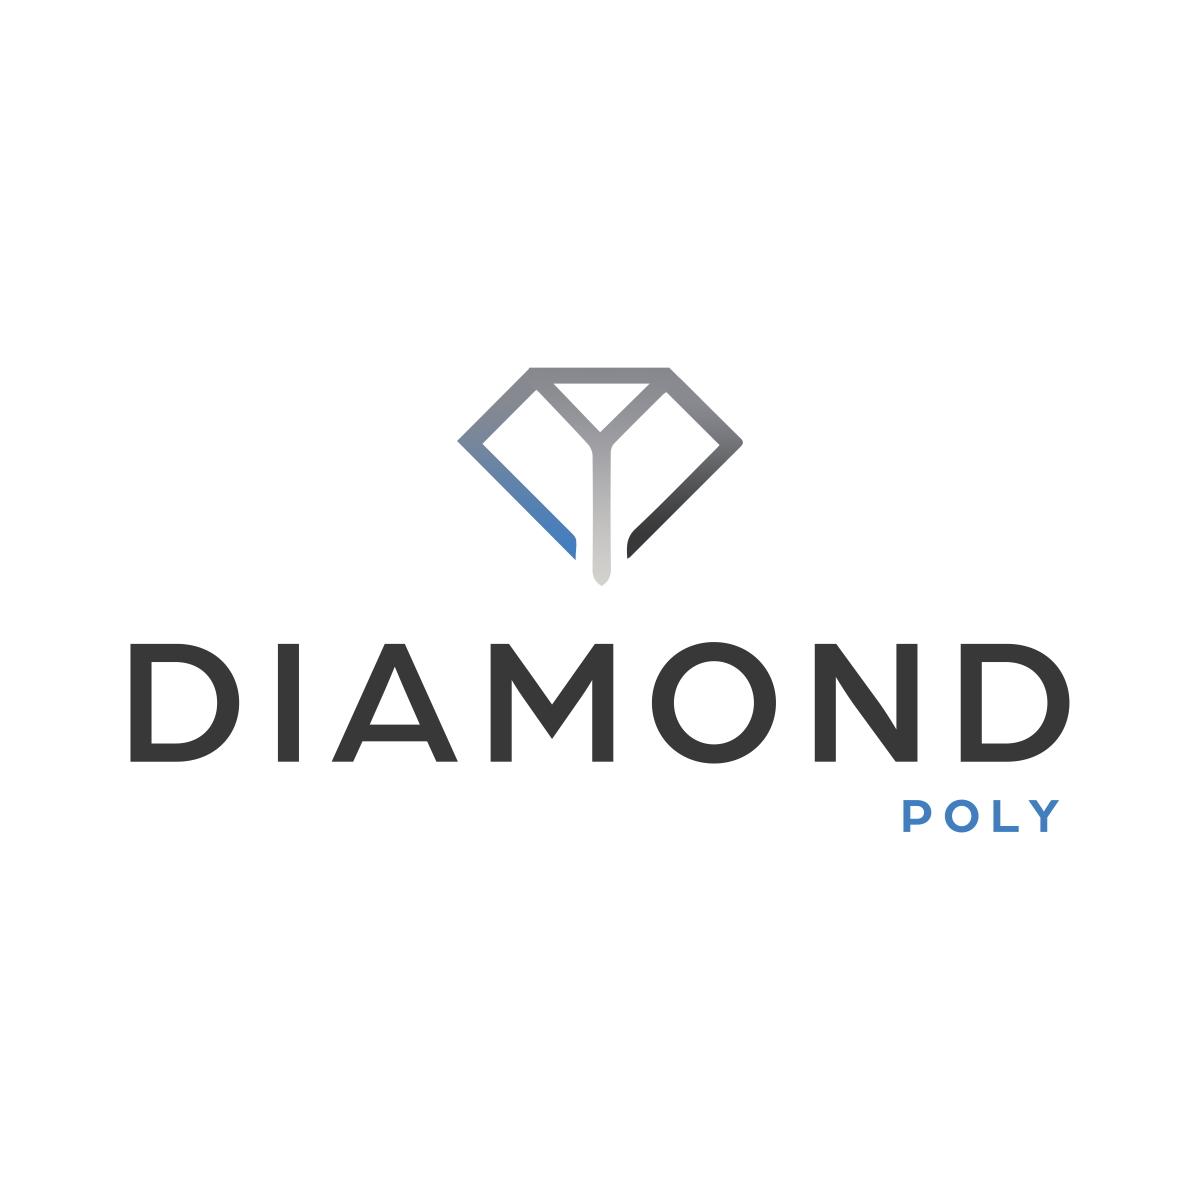 Diamond “Poly“